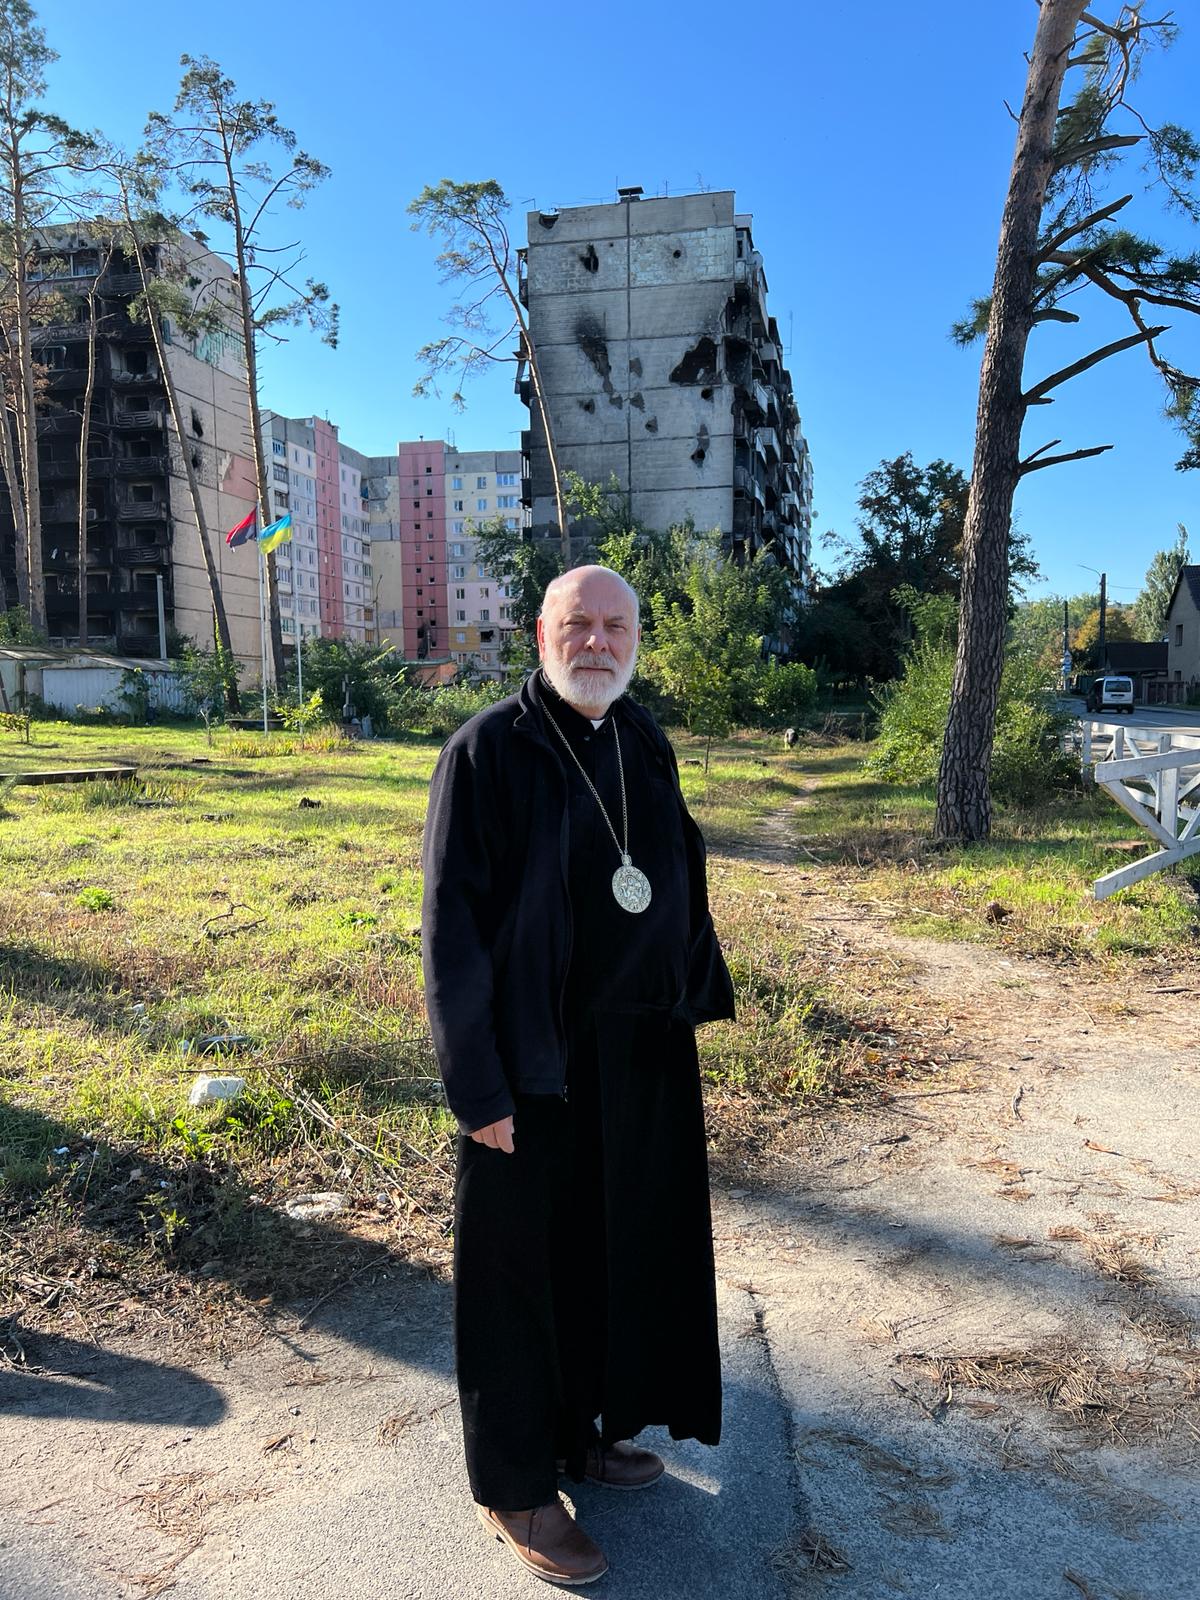 Bishop Nowakowski in the destroyed Kyiv region in Ukraine